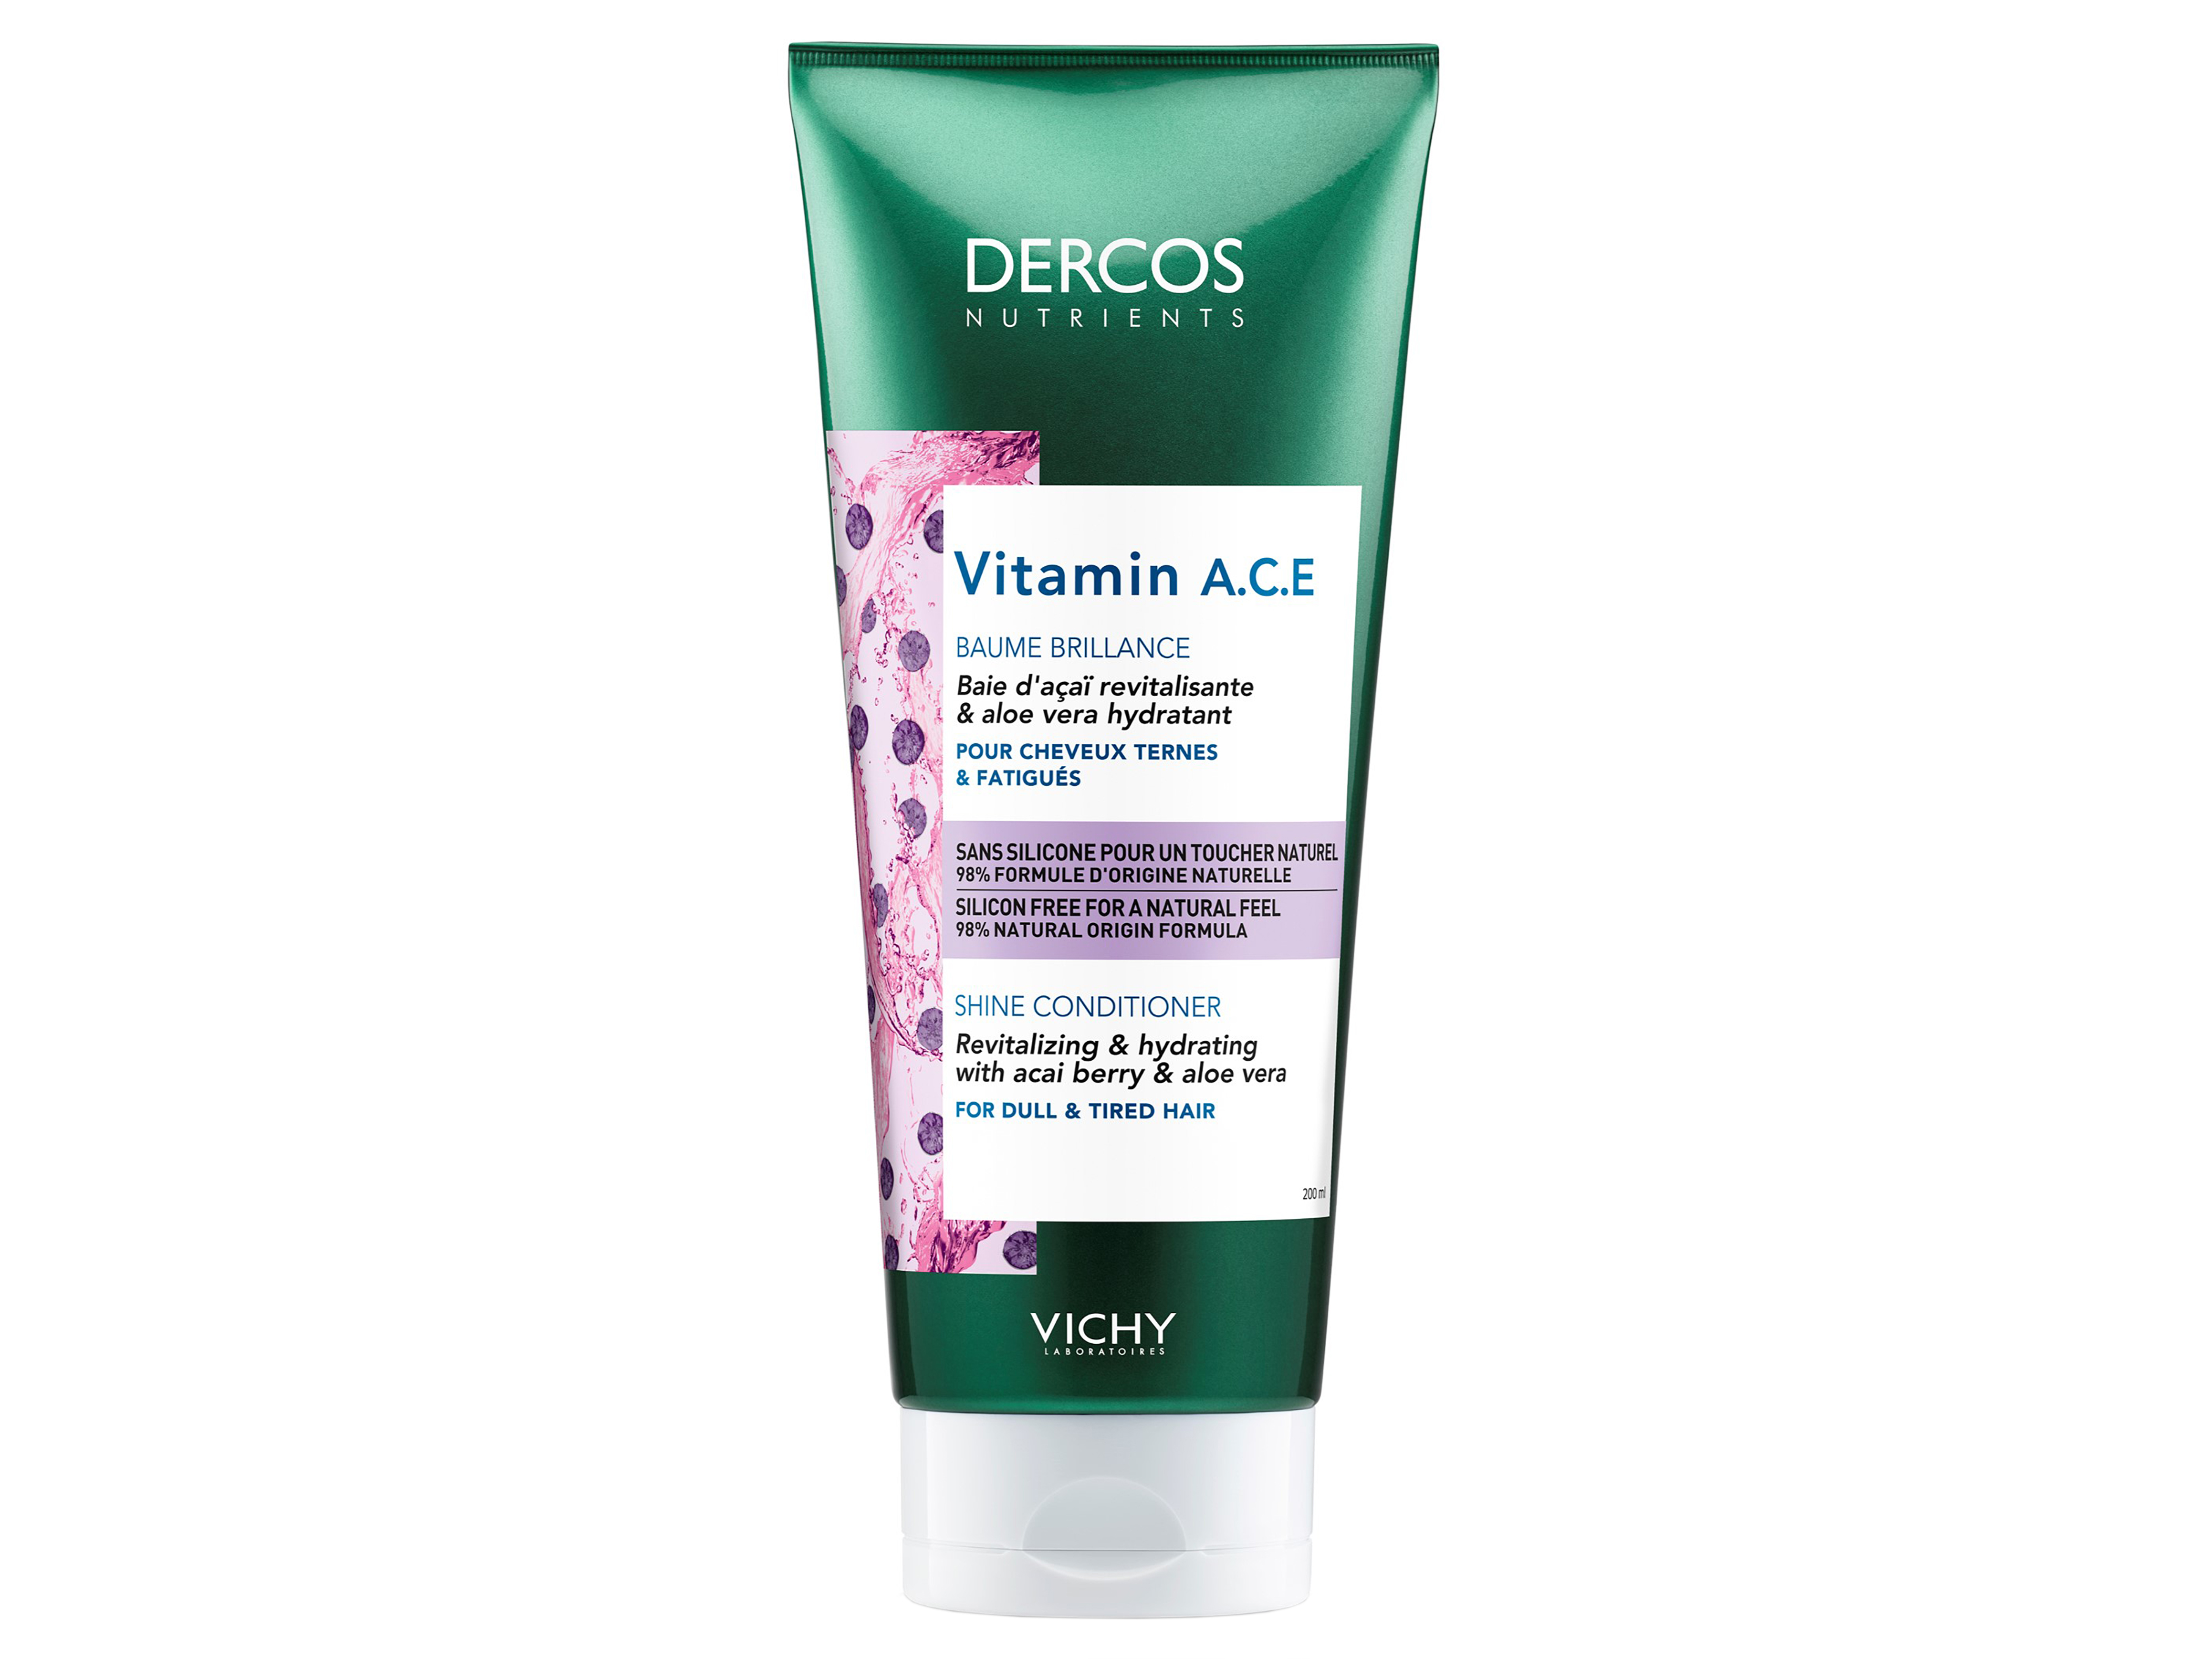 Vichy Dercos Nutrients Vitamin Condition, 200 ml